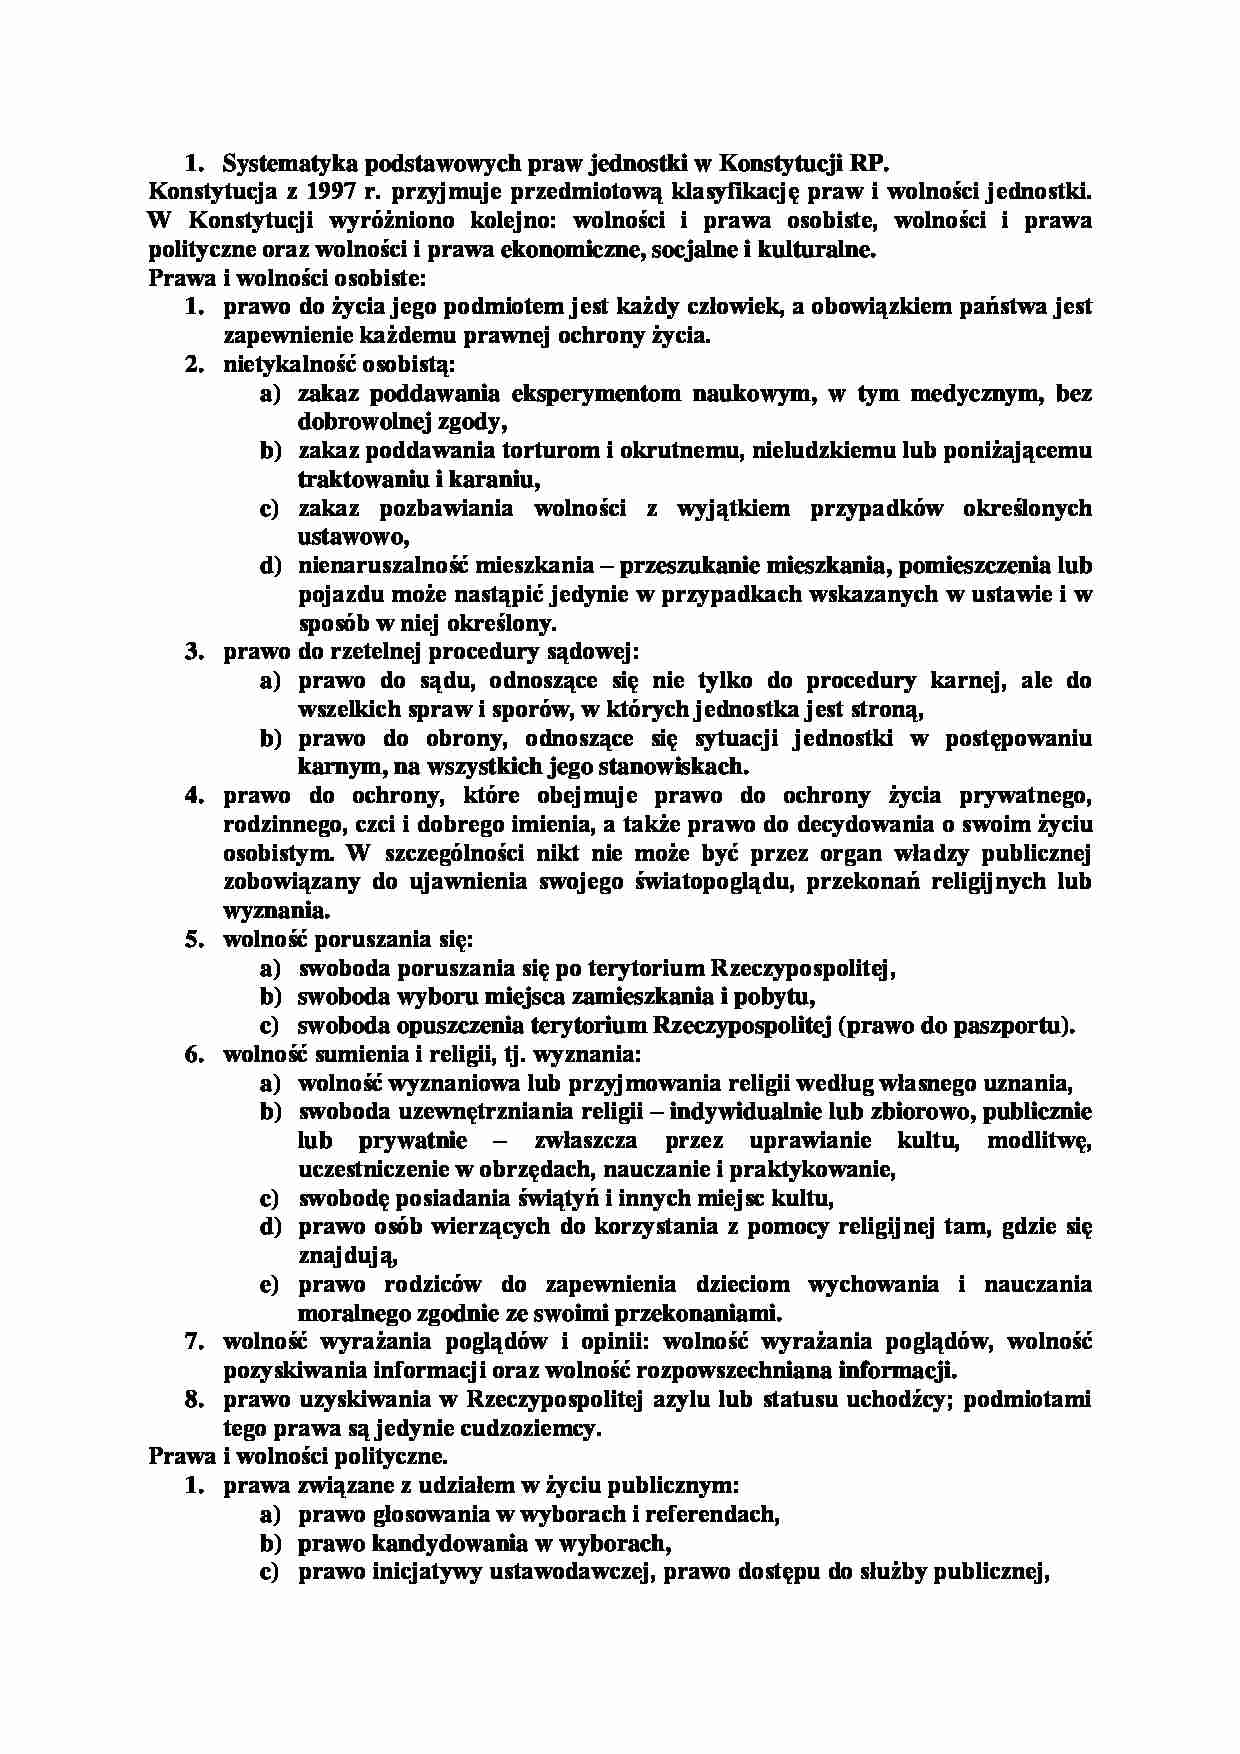 Systematyka podstawowych praw jednostki w Konstytucji RP-opracowanie - strona 1